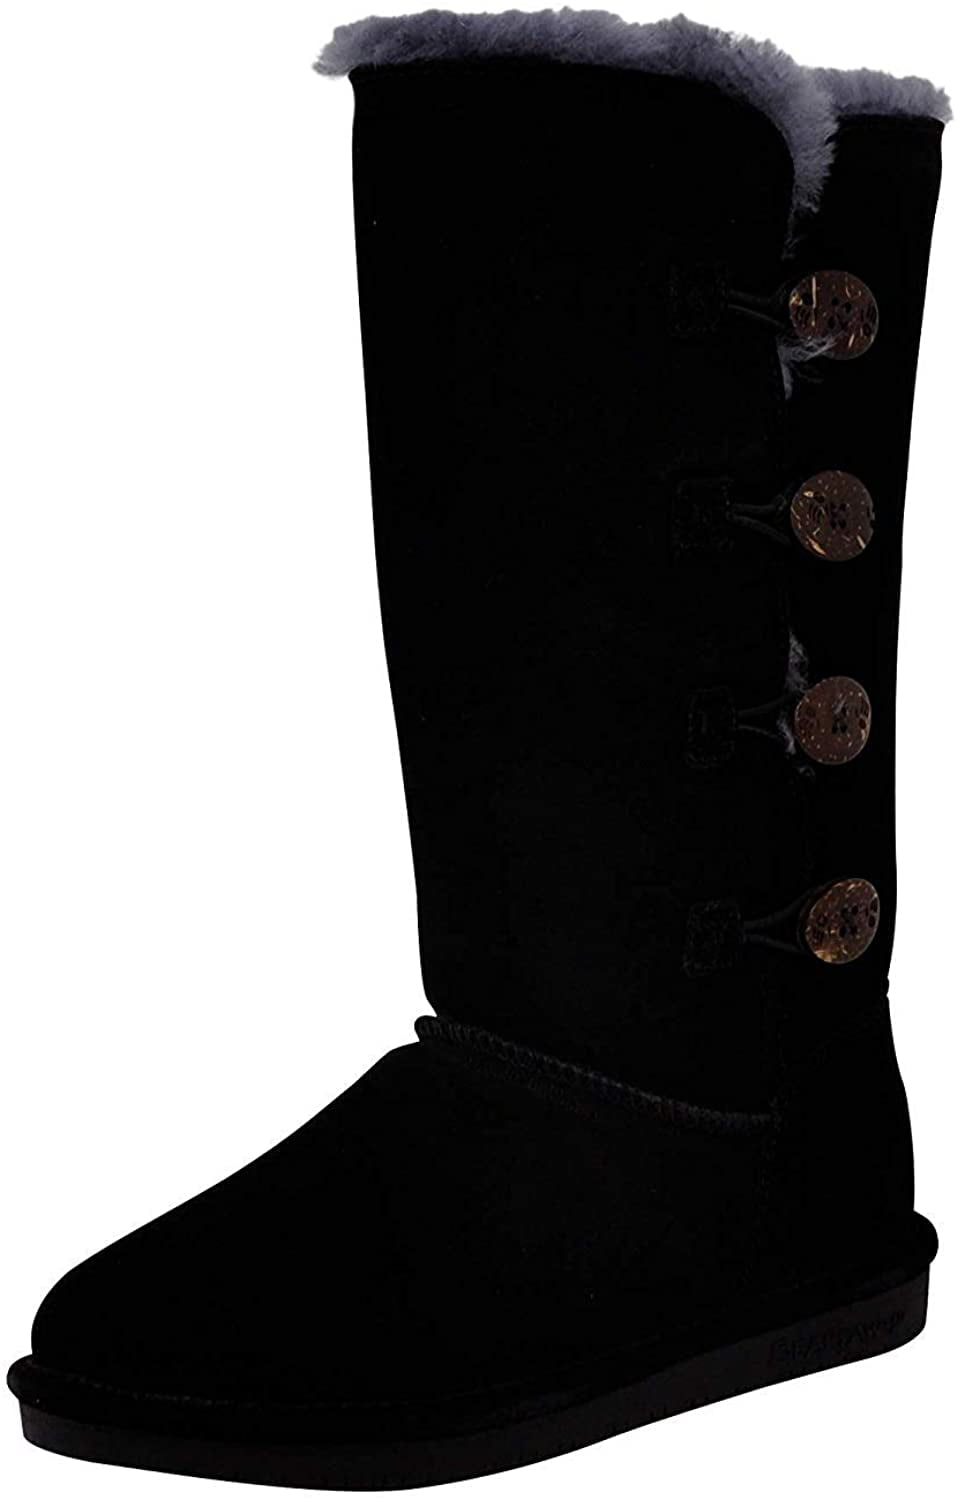 bearpaw women's lori tall boot